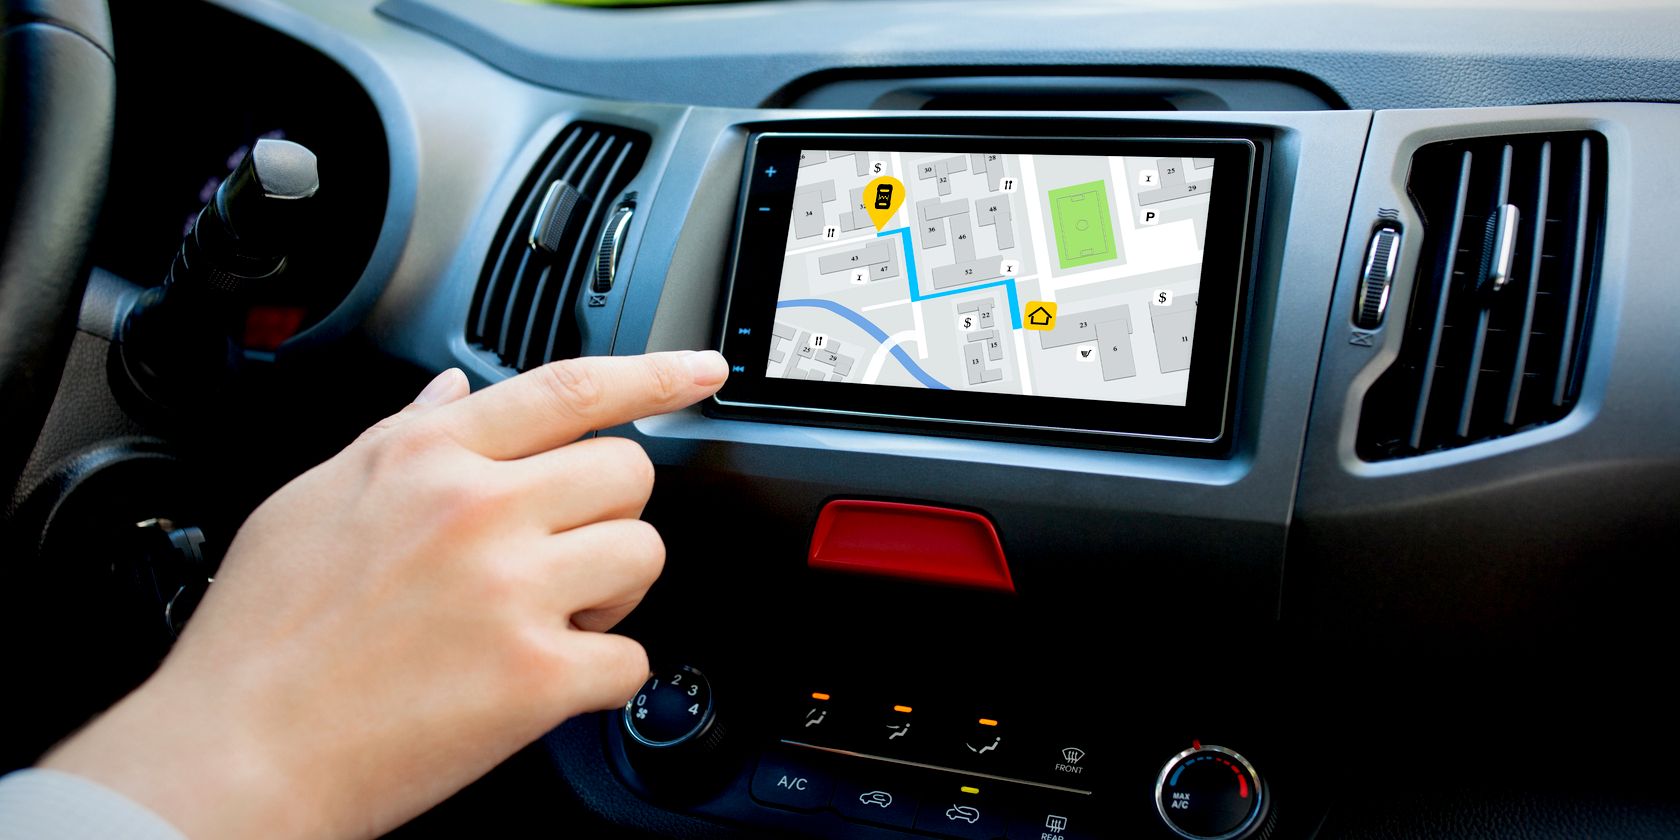  Car Navigation System